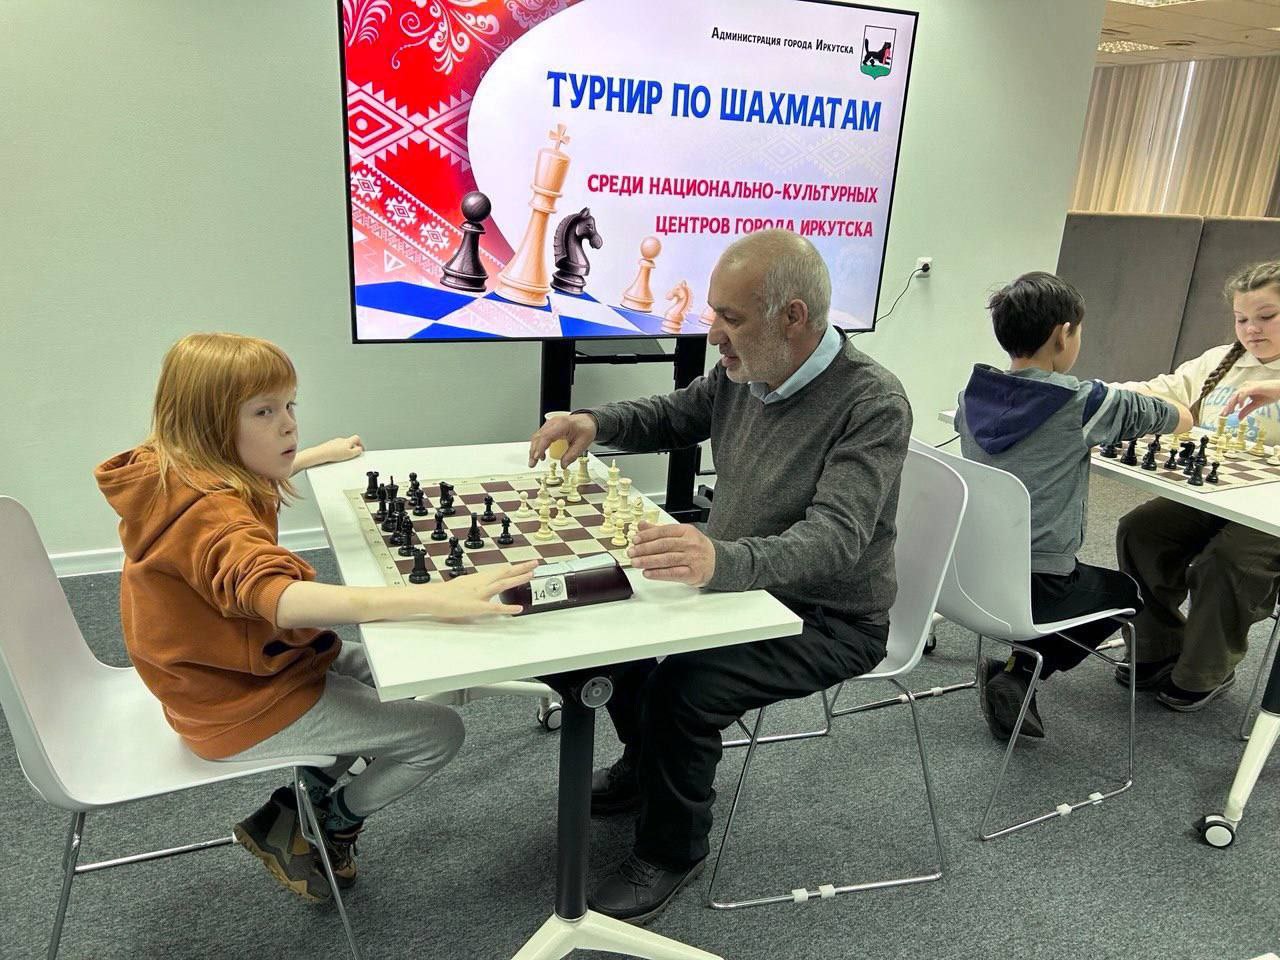 Турнир по быстрым шахматам прошел в Иркутске